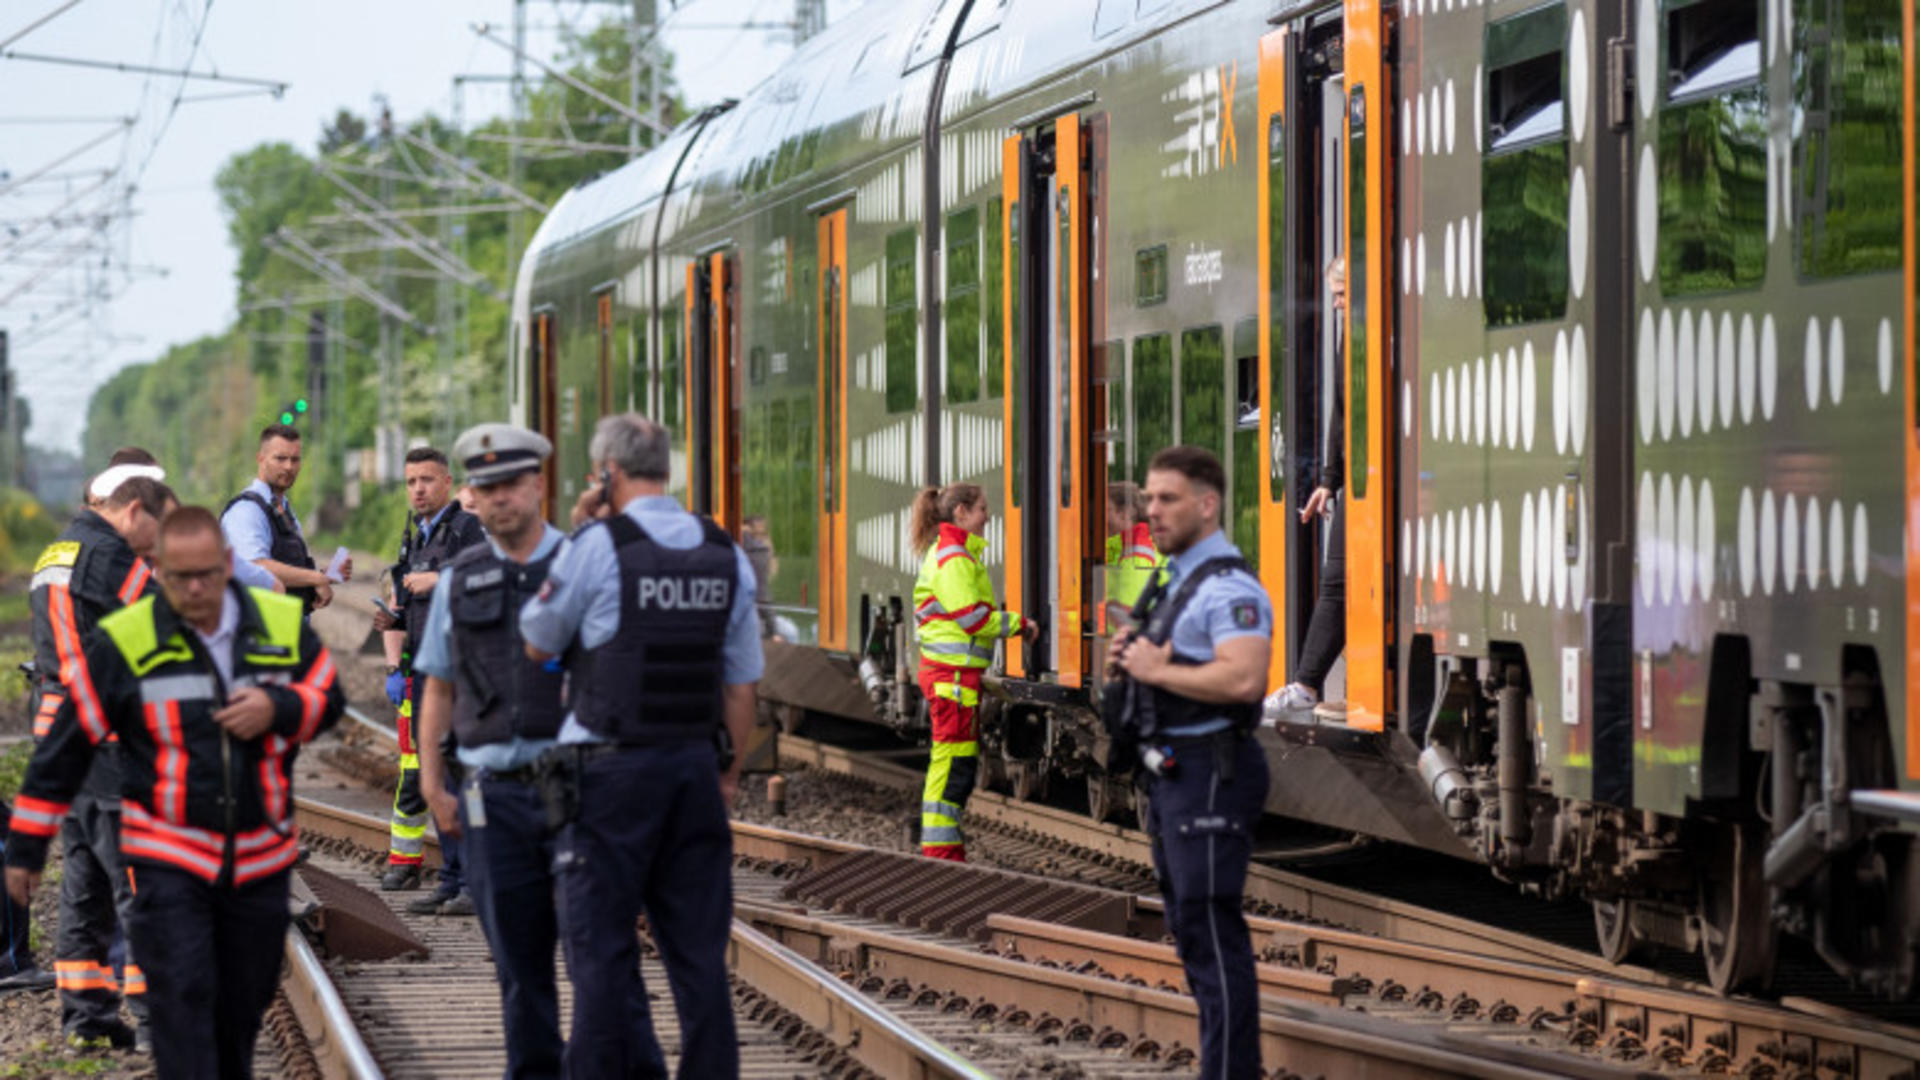 Atac cu cuțitul într-un tren din Germania / Foto: Profi Media